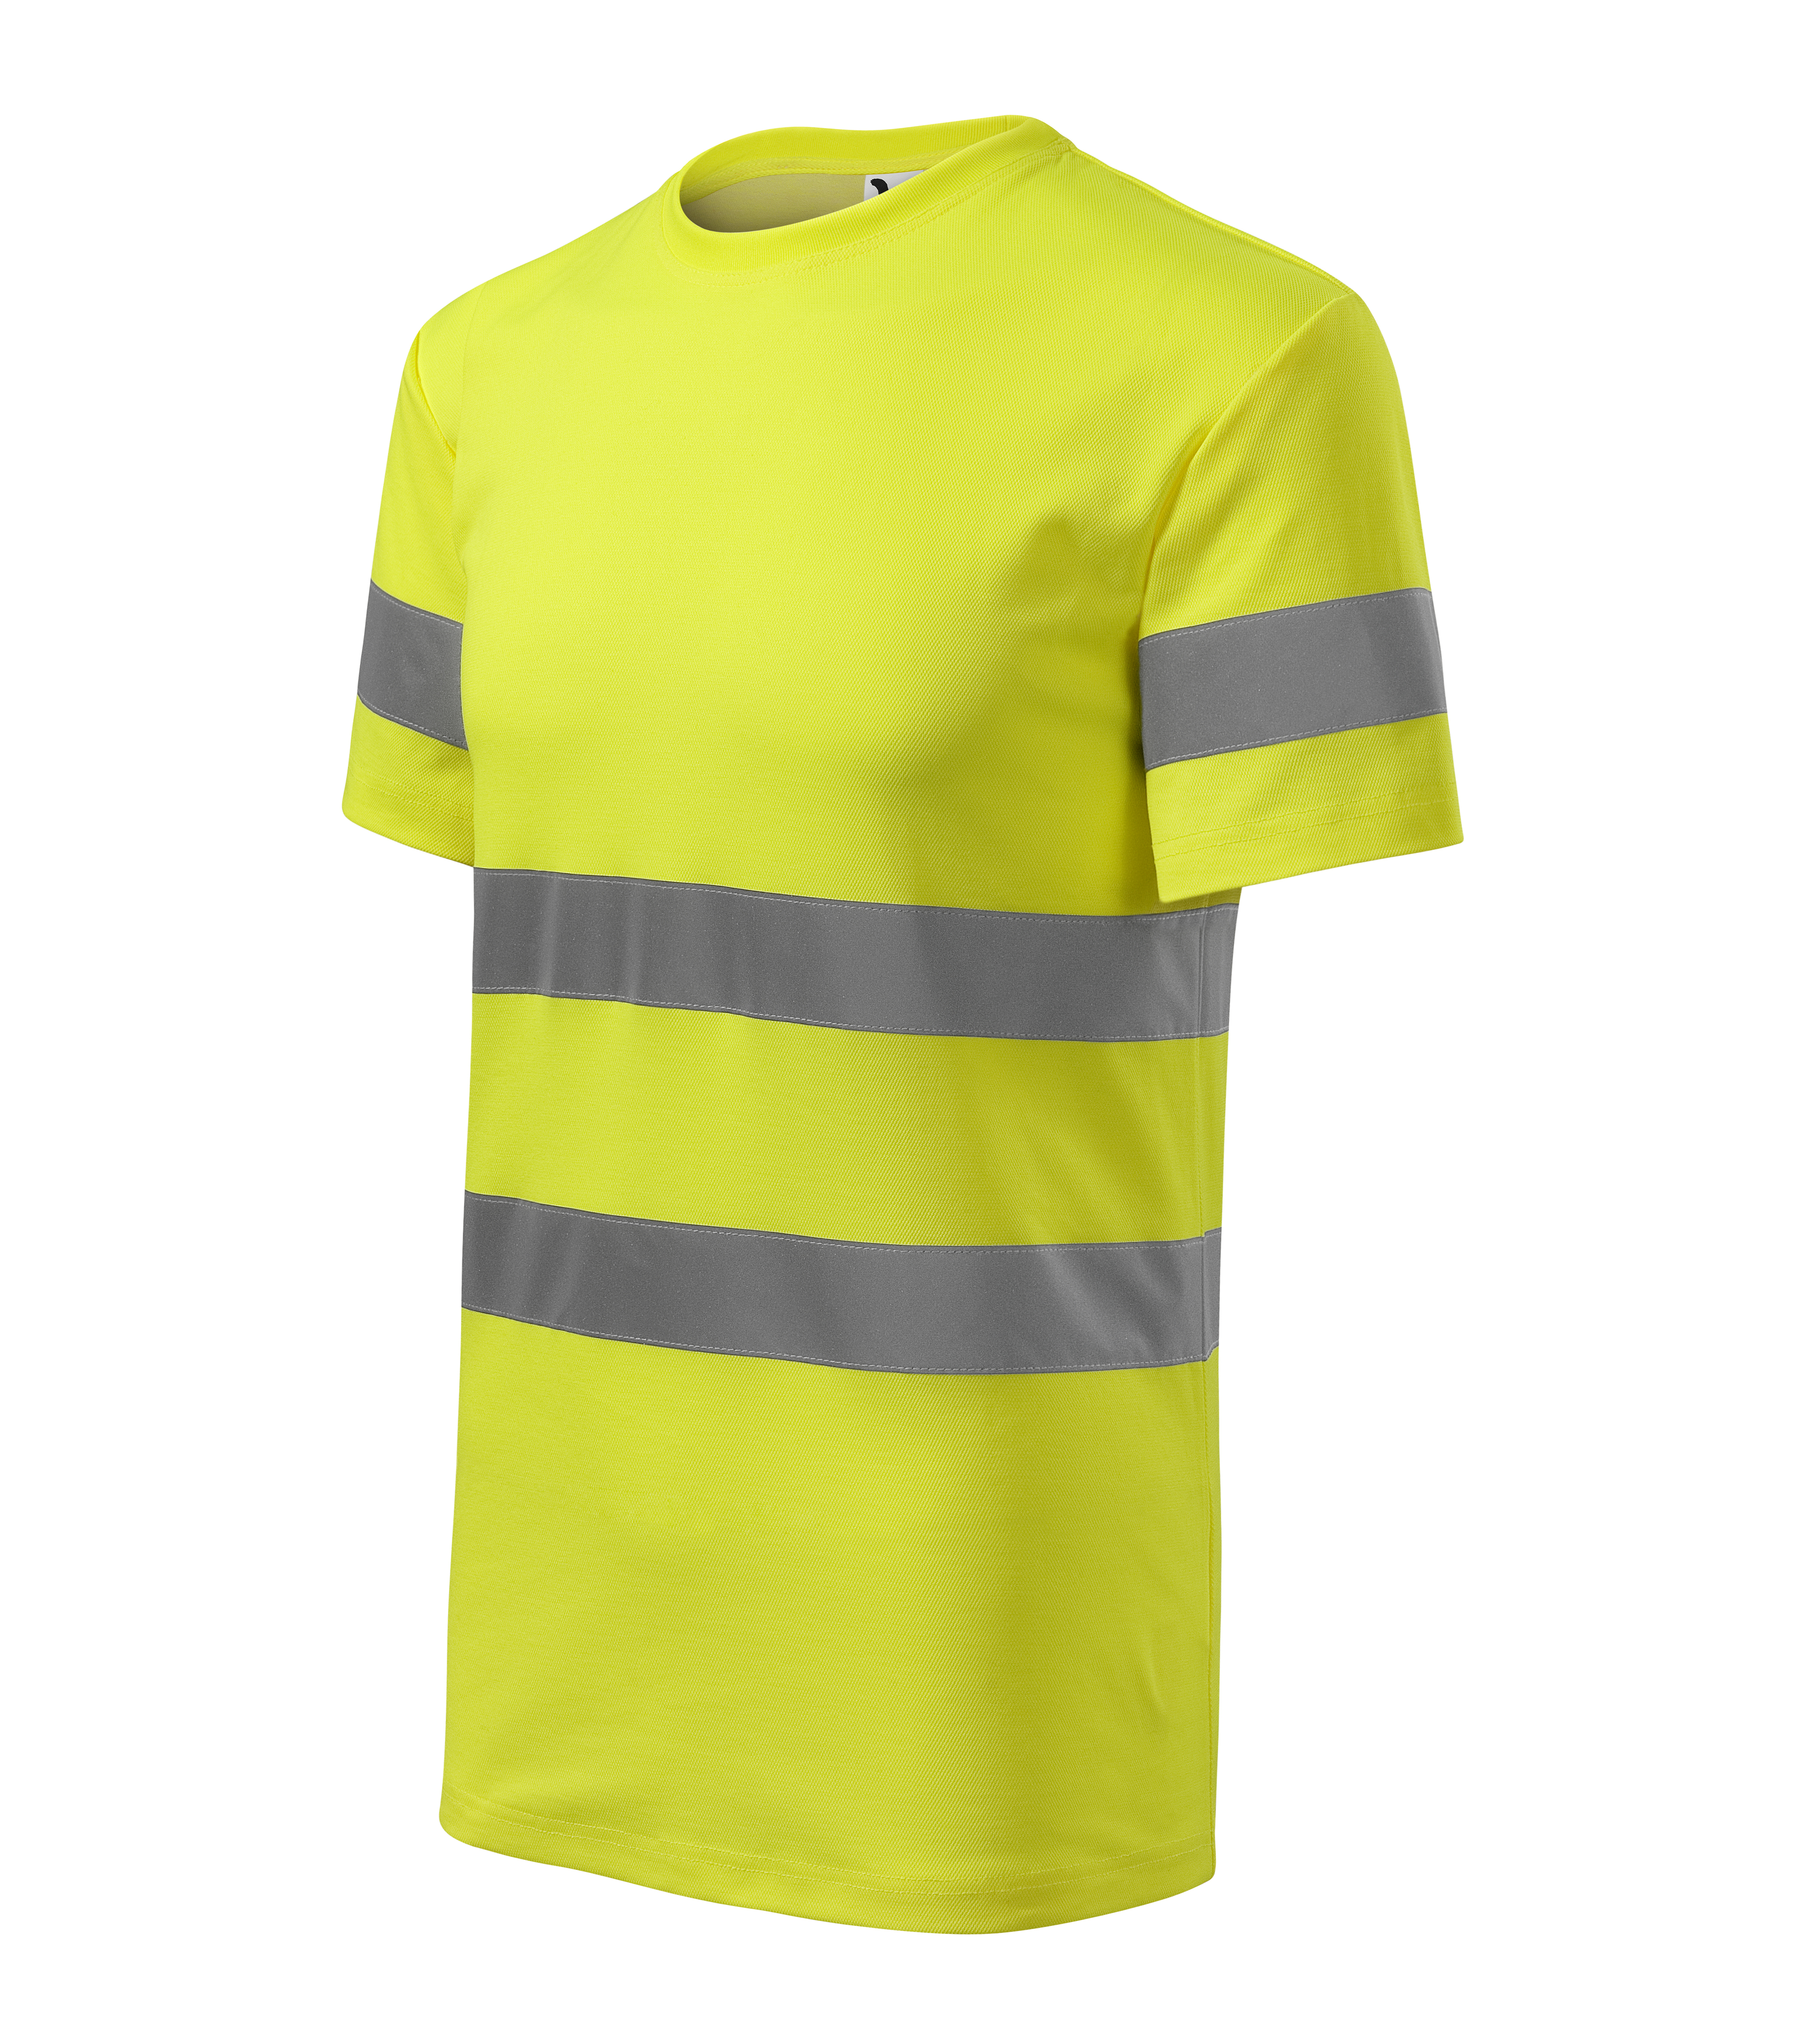 Żółta koszulka odblaskowa Protect